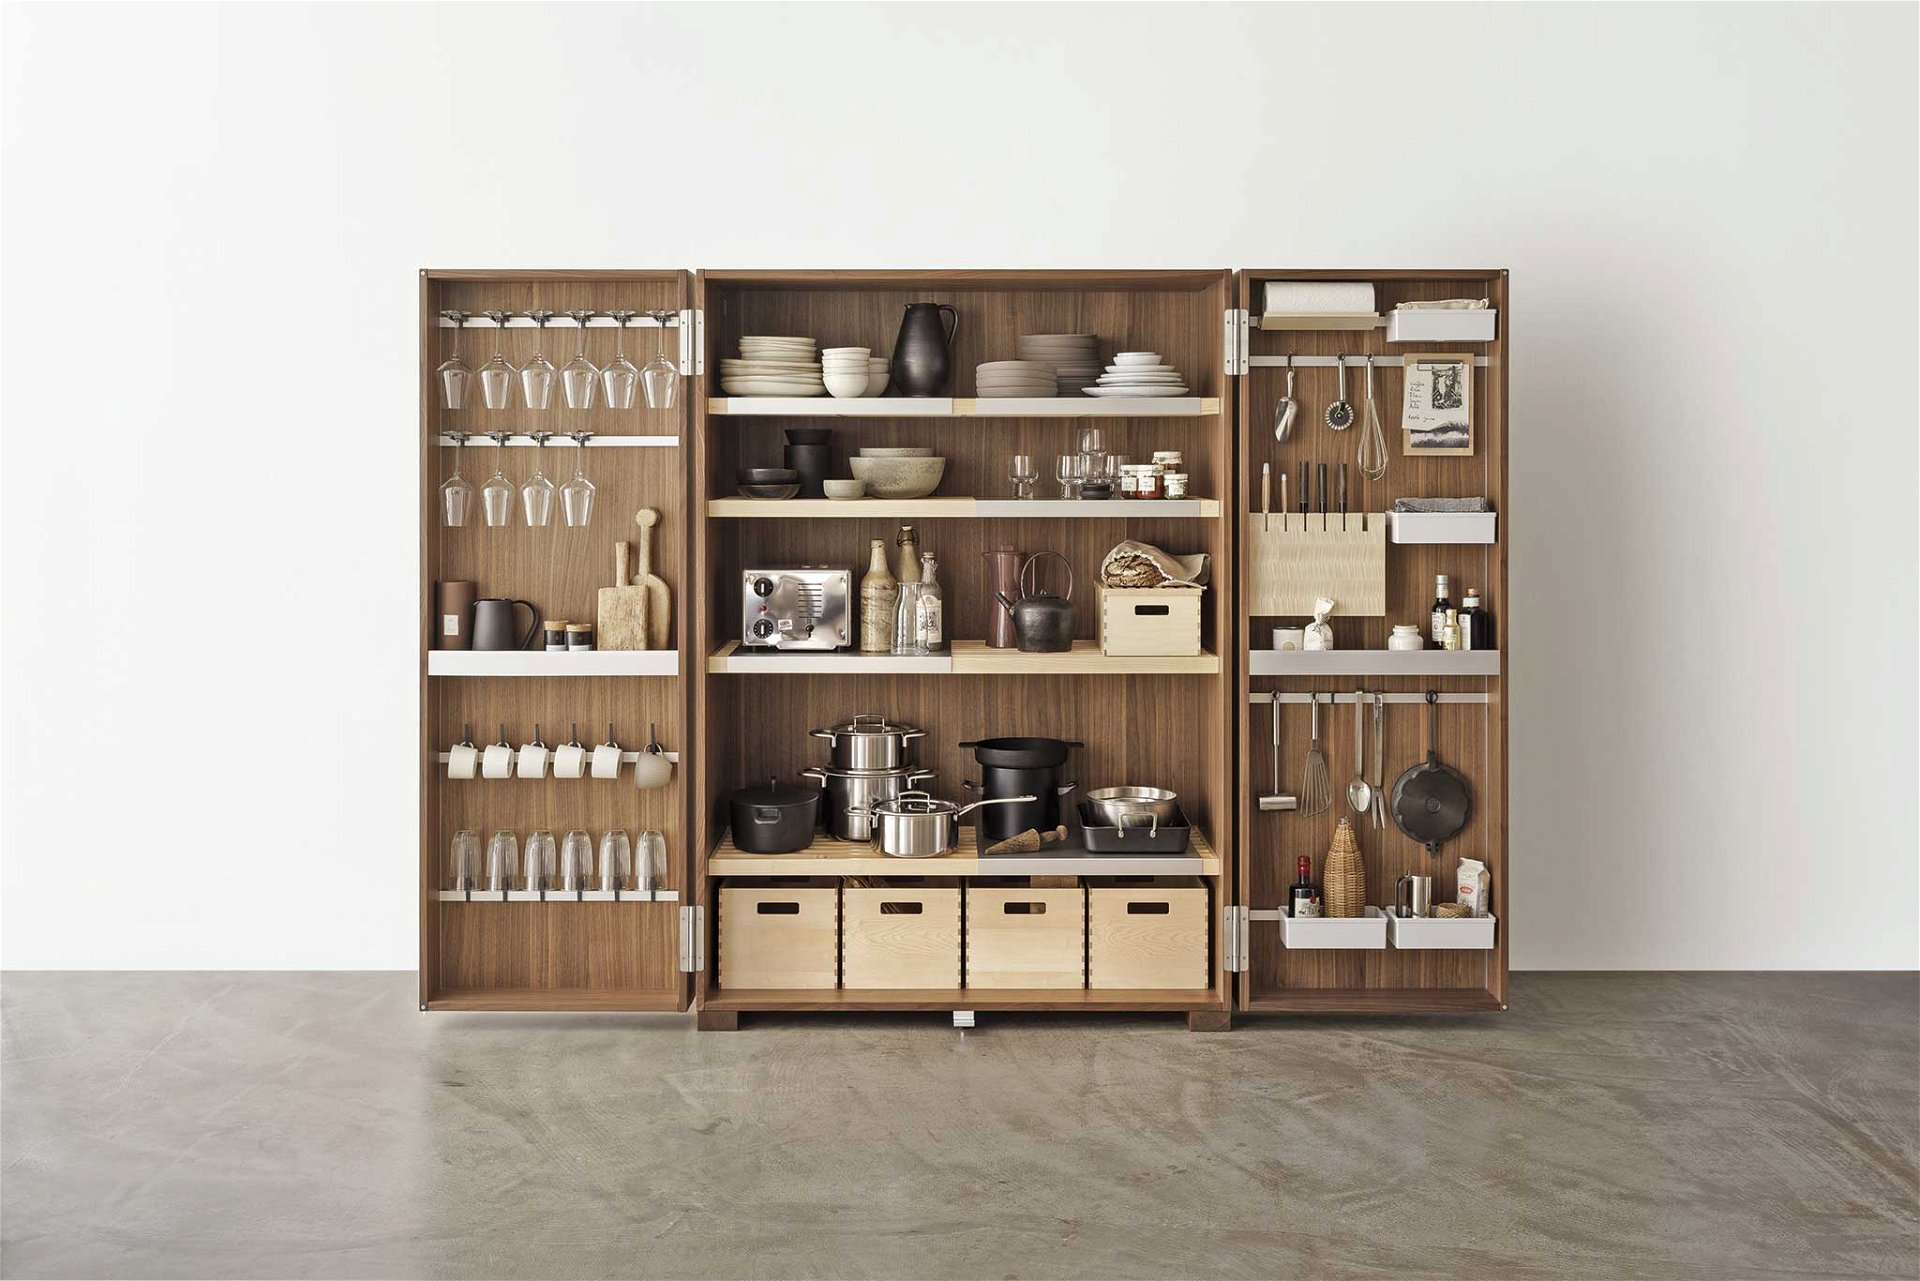 Handwerkskunst - EOOS hat für Bulthaup einen Küchenschrank entworfen, der an einen Werkzeugkasten erinnert: sehr reduziert und alles hat seinen vorgesehenen Platz. bulthaup.com